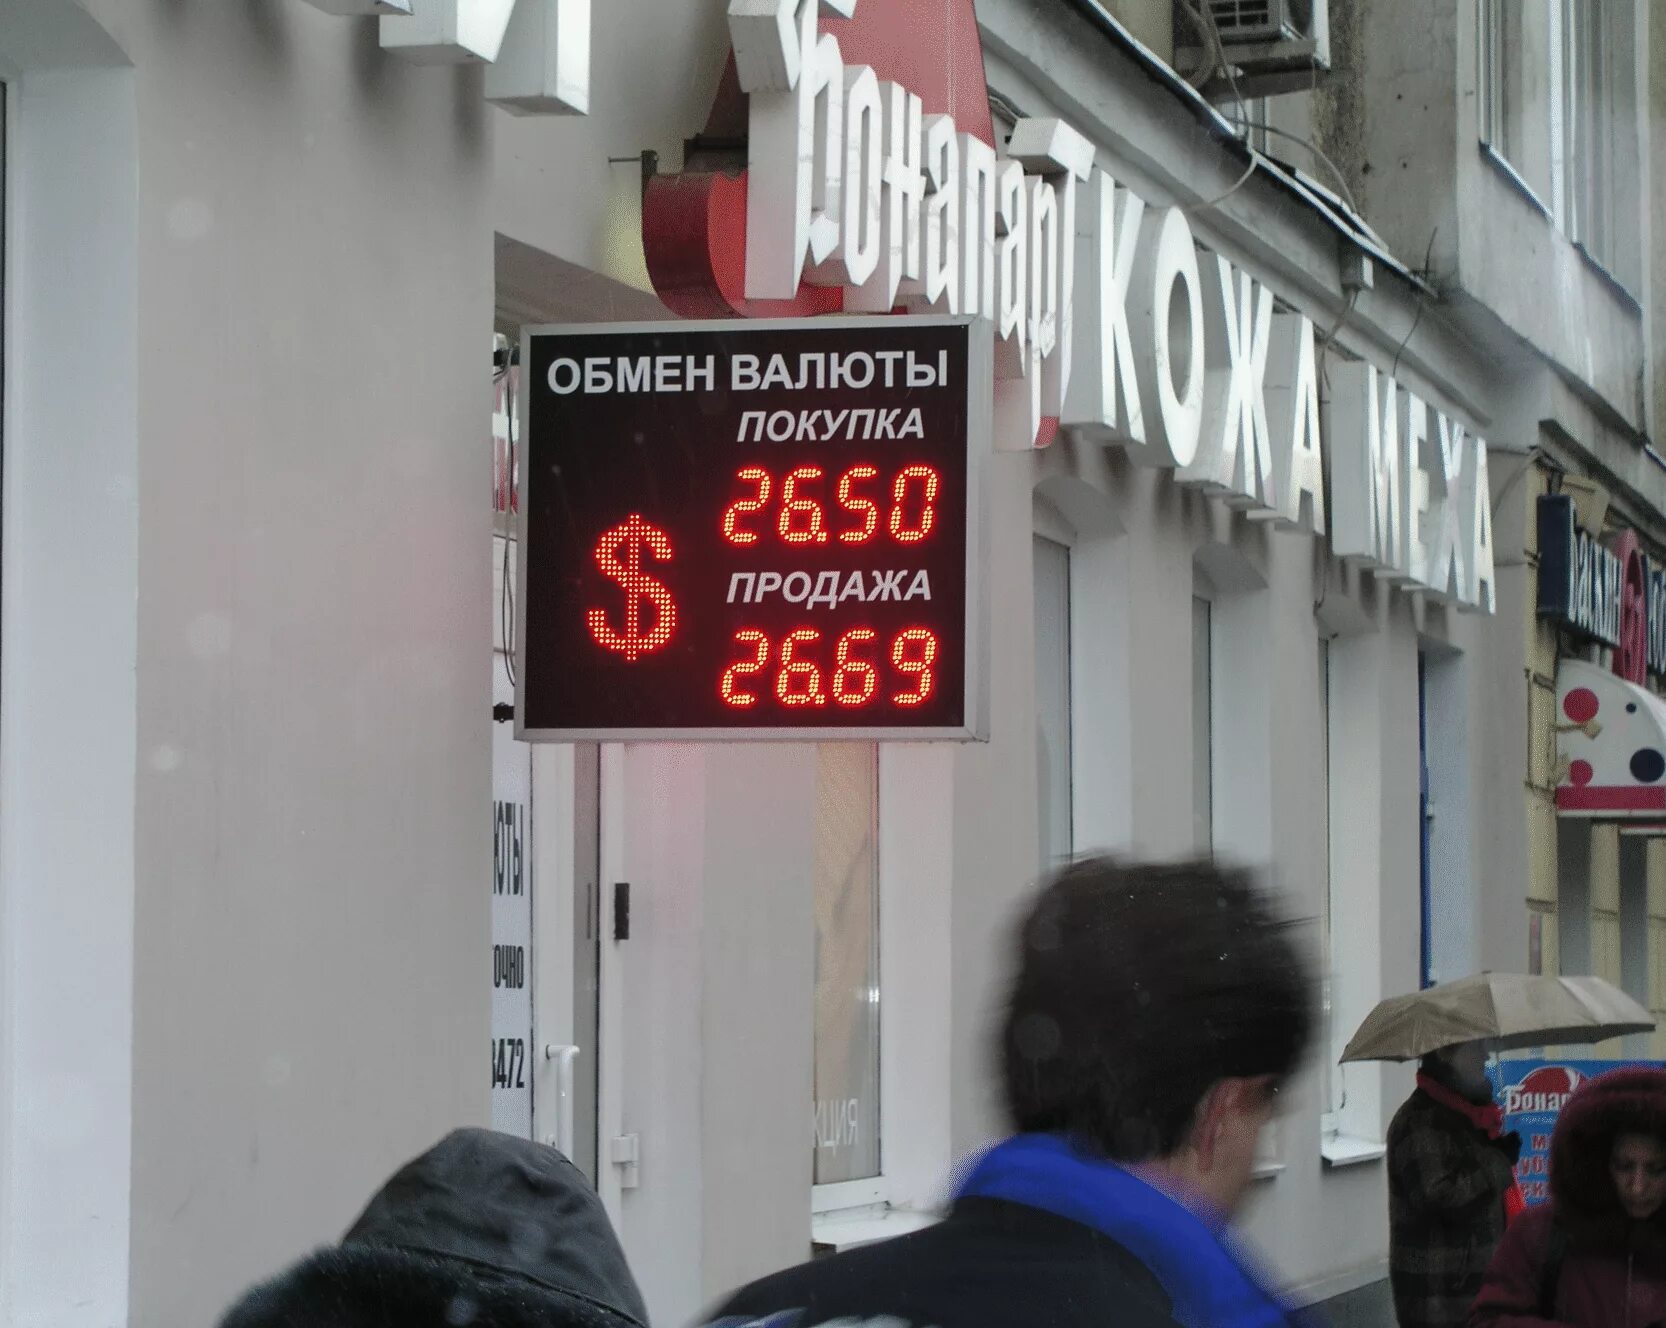 Обмен валюты в банках москвы наличными. Обмен валюты. Обменник валют. Табло обмена валют. Обменный пункт валюты.